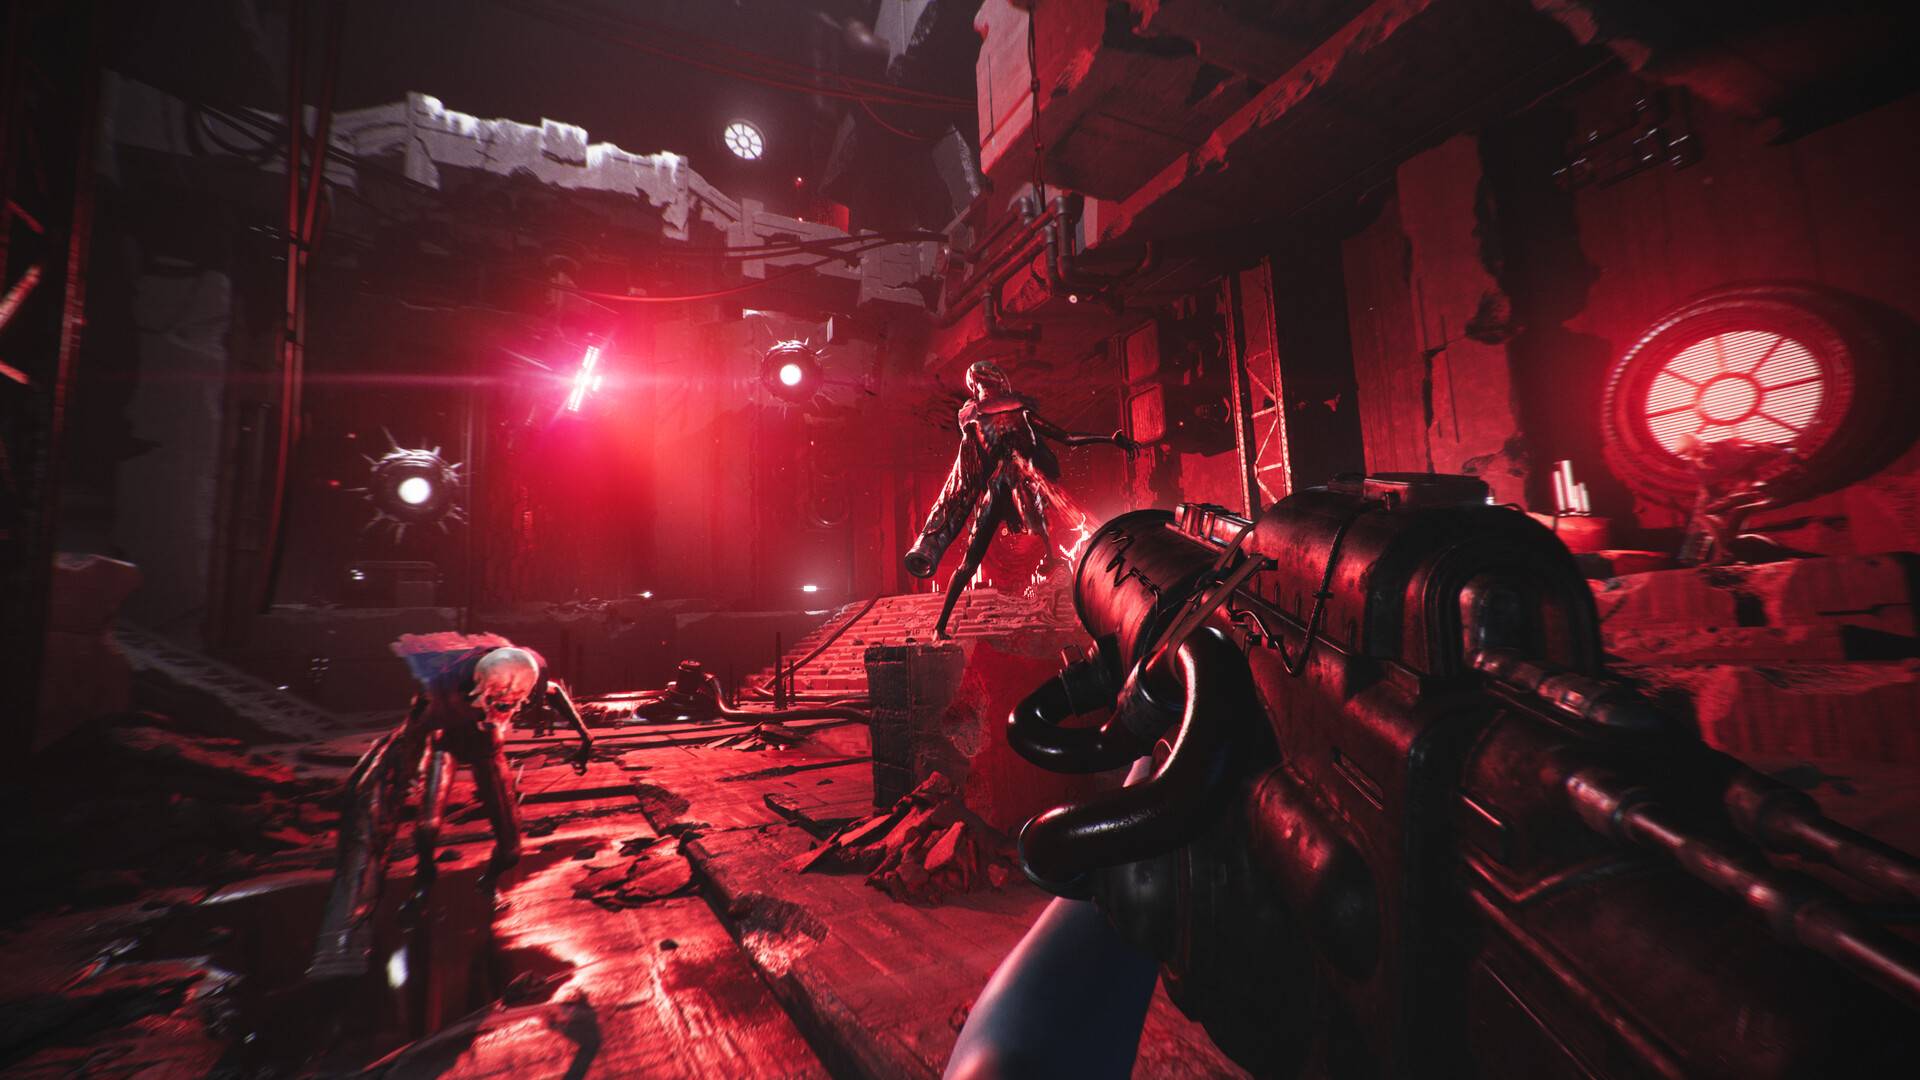 Eine Figur in einem Videospiel schießt in einem metallenen Raum auf Monster, hinter denen rote Lichter blinken